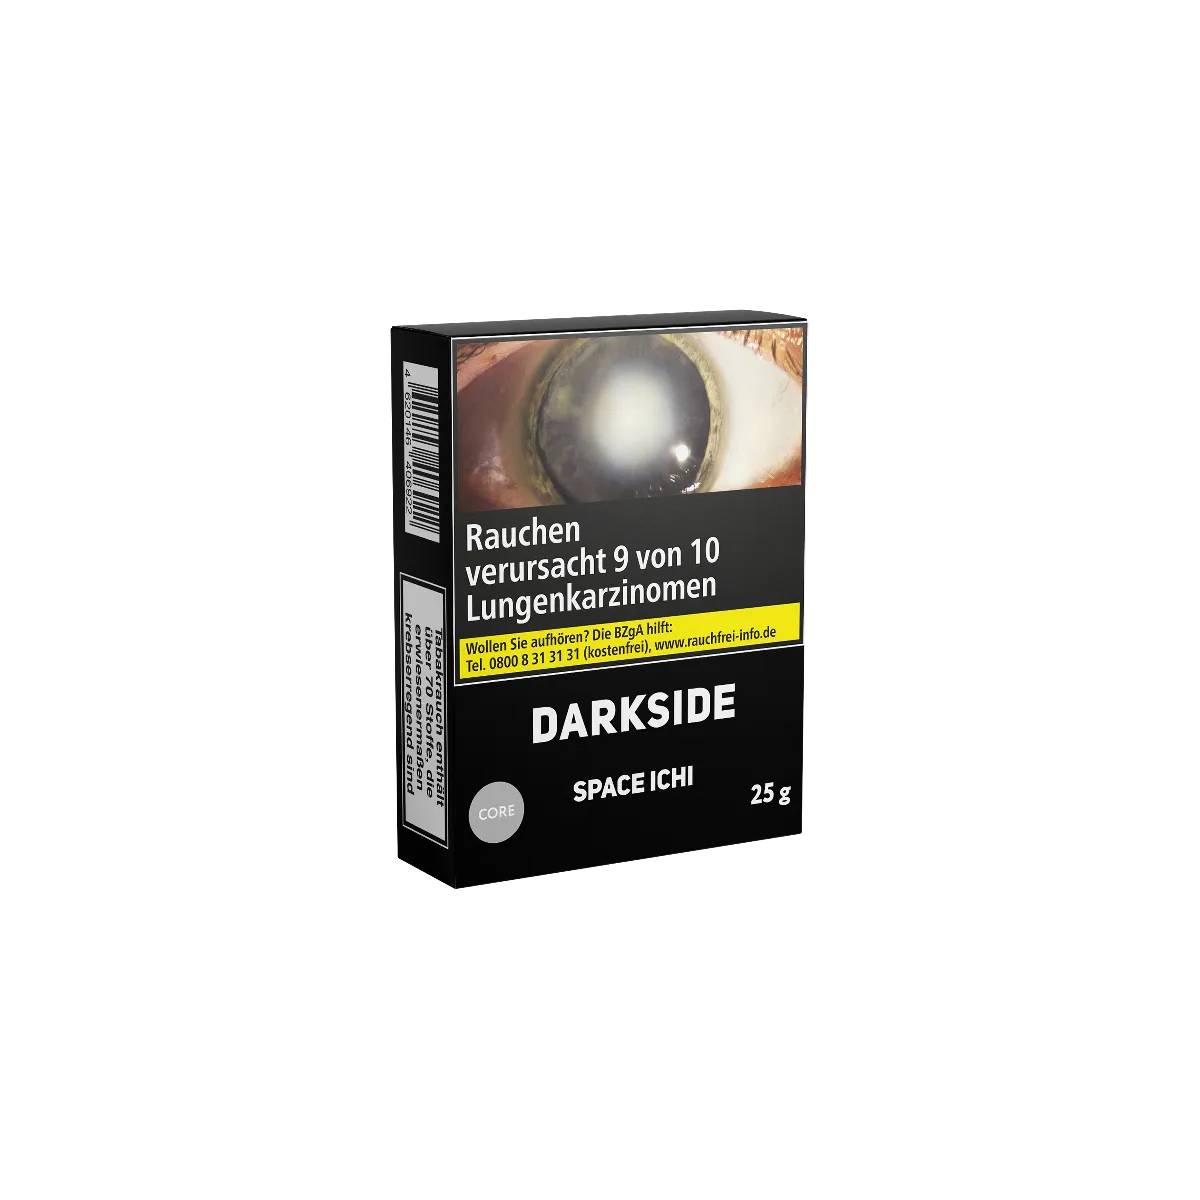 Darkside Core Space Ichi 25g Shishatabak Online bestellen